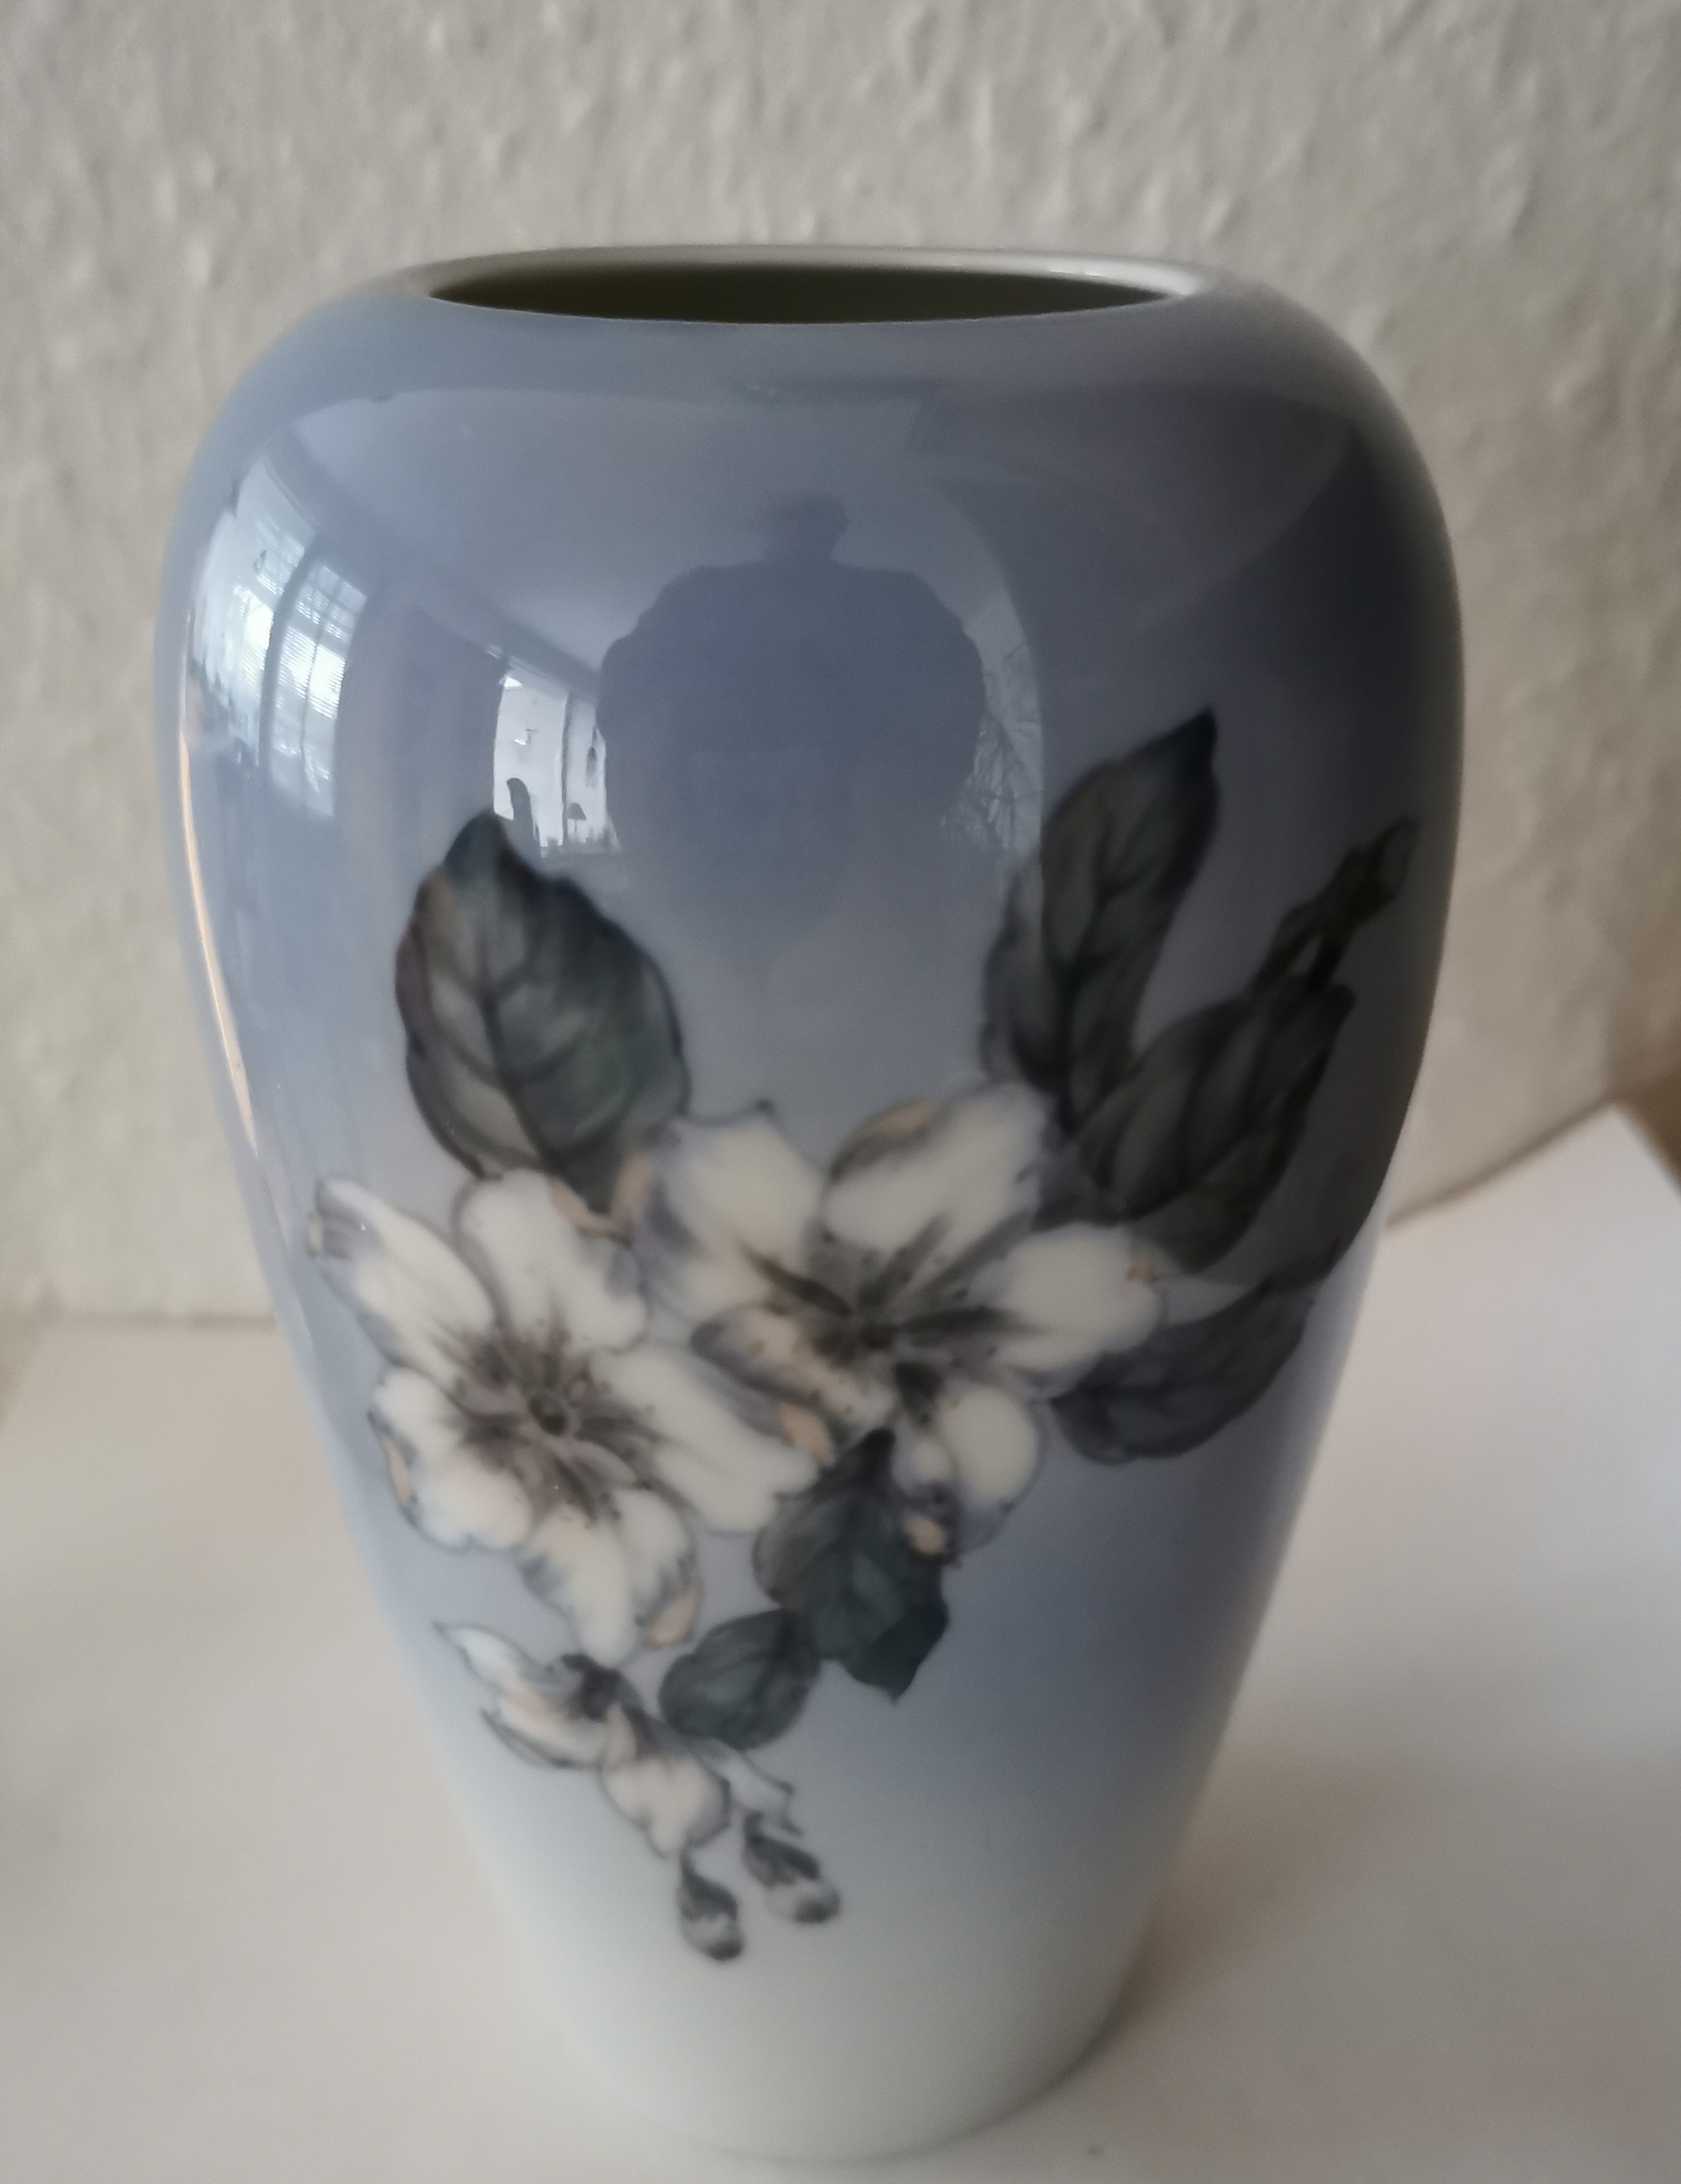 Lyngby vase